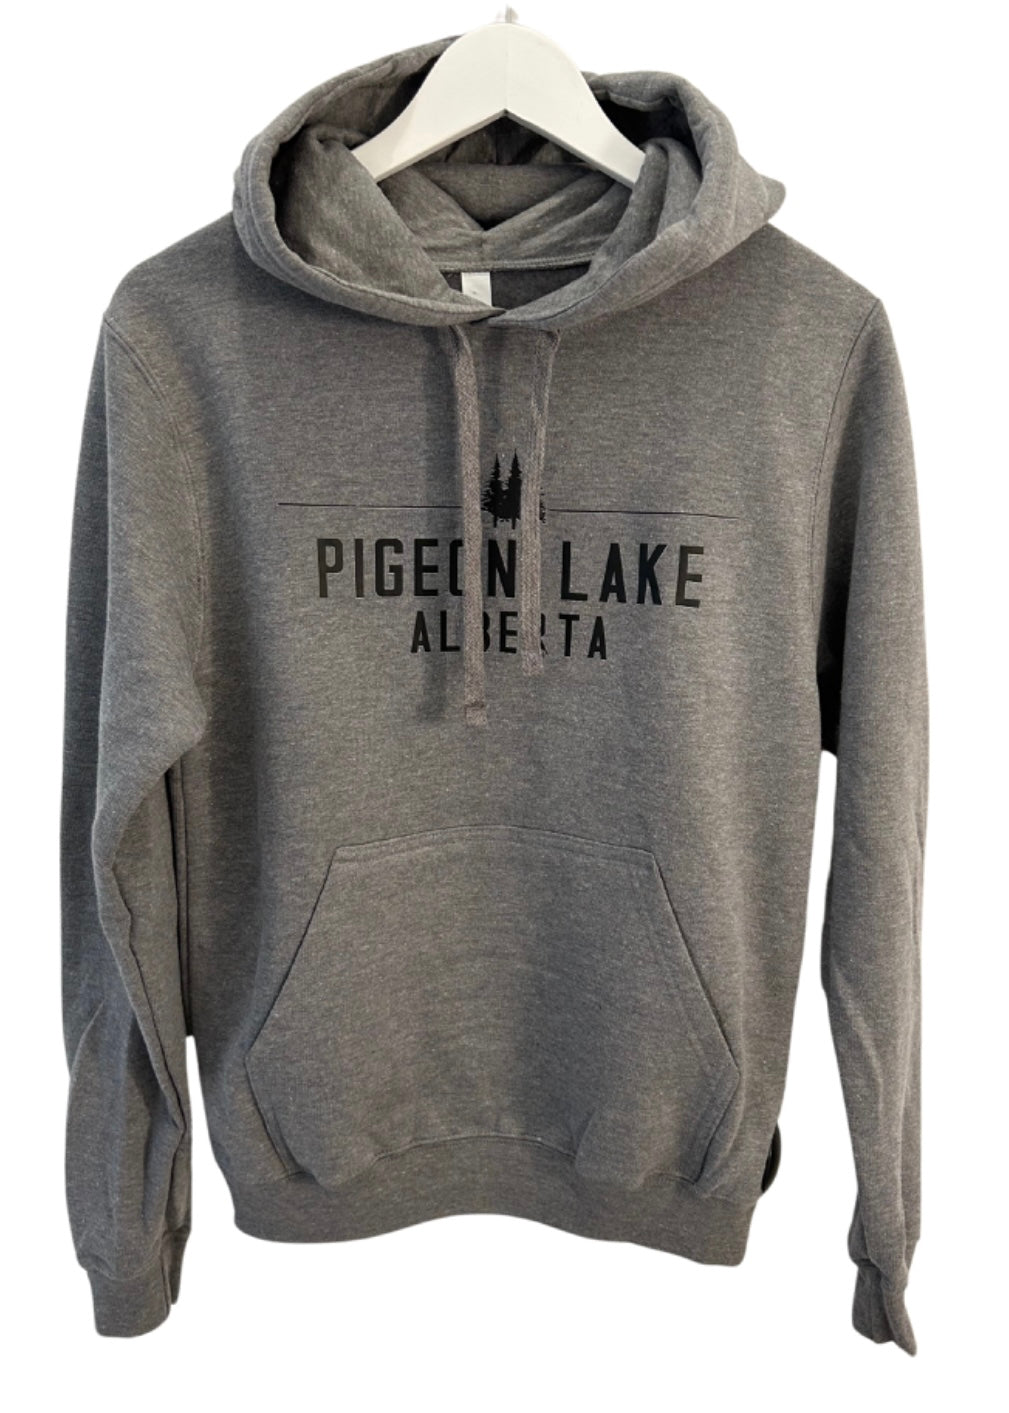 Pigeon Lake, Alberta Hoodie